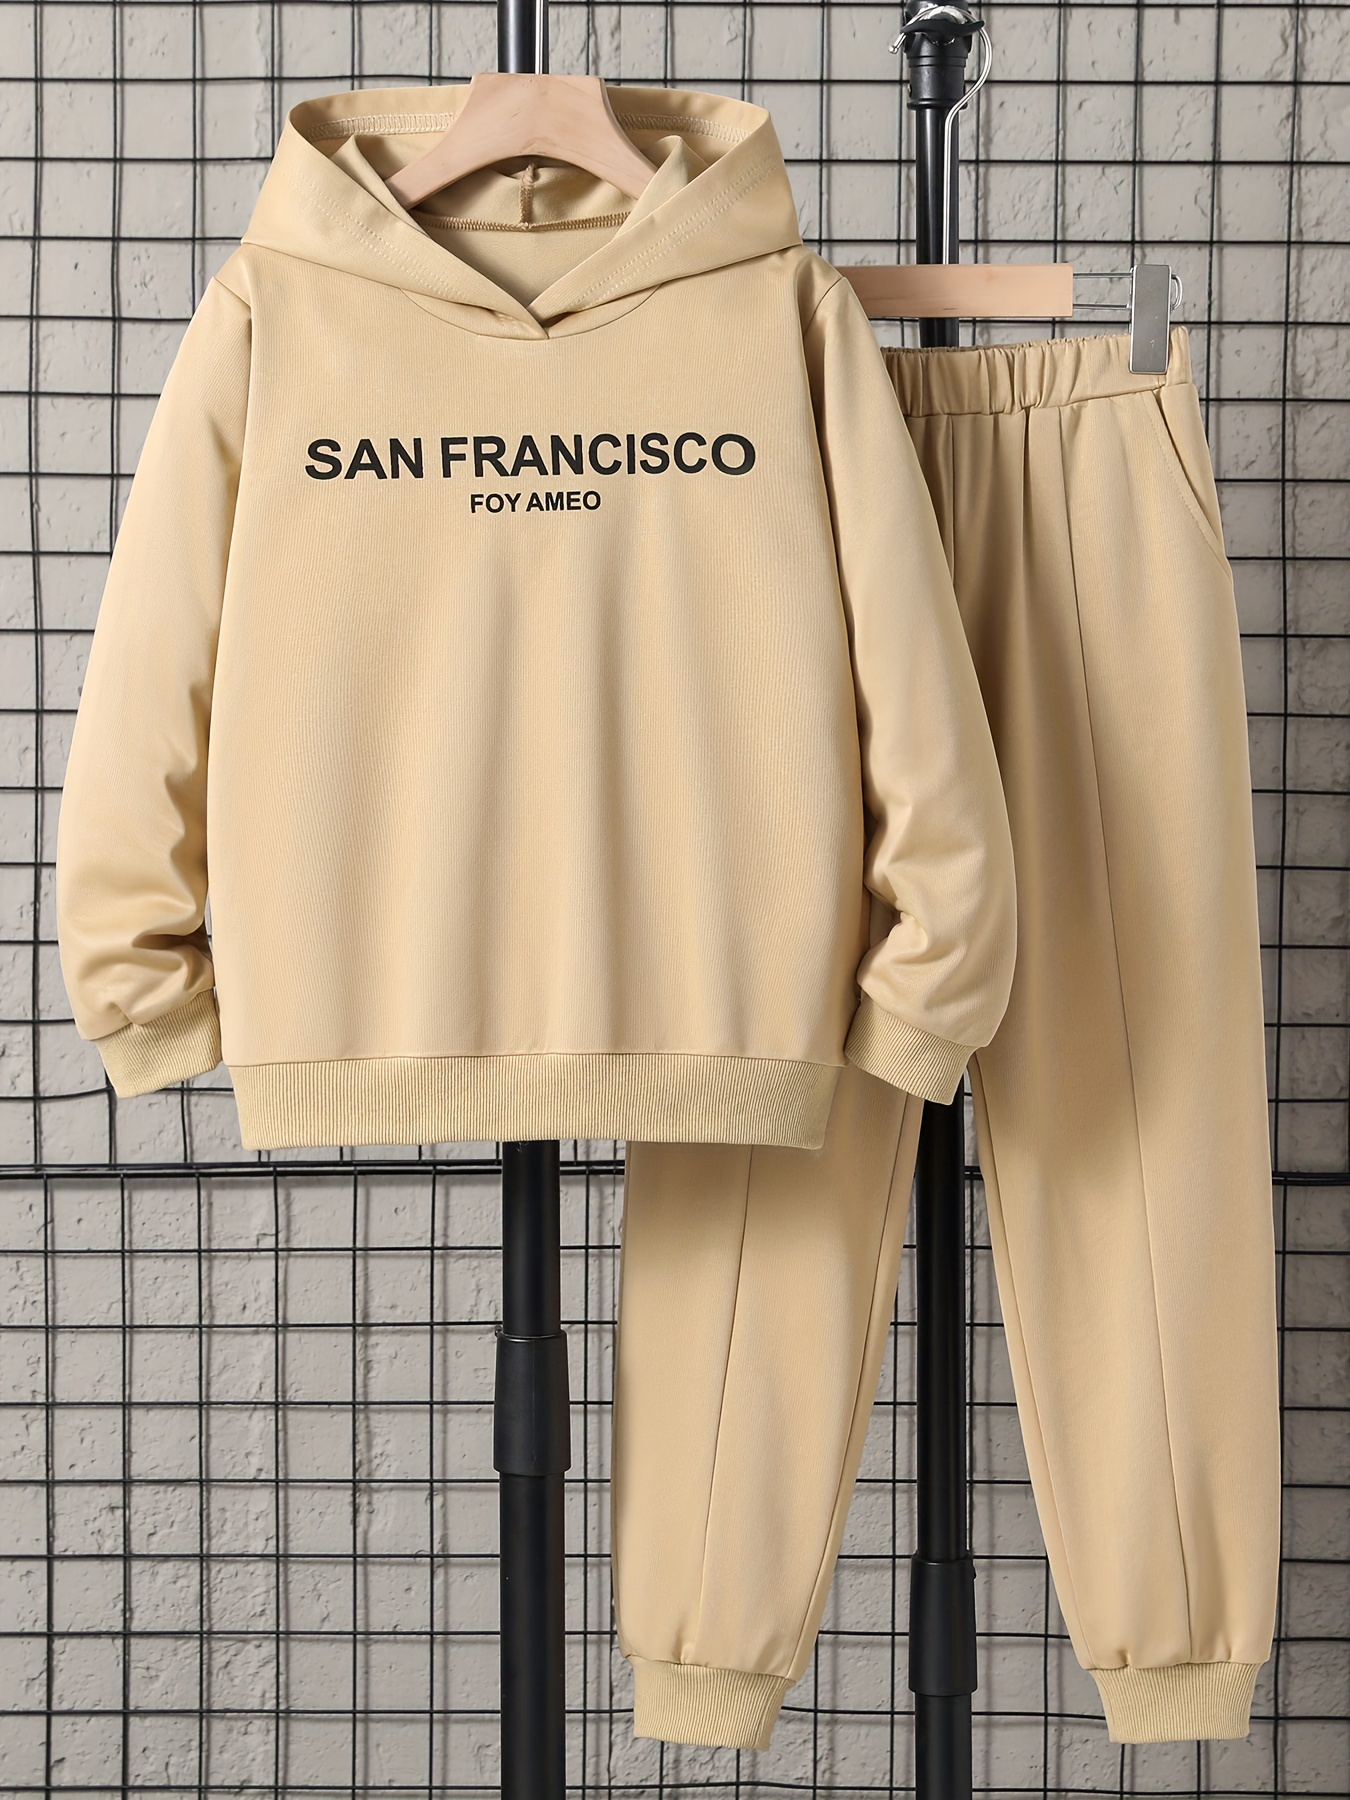 Accessoires et déguisements à San Francisco